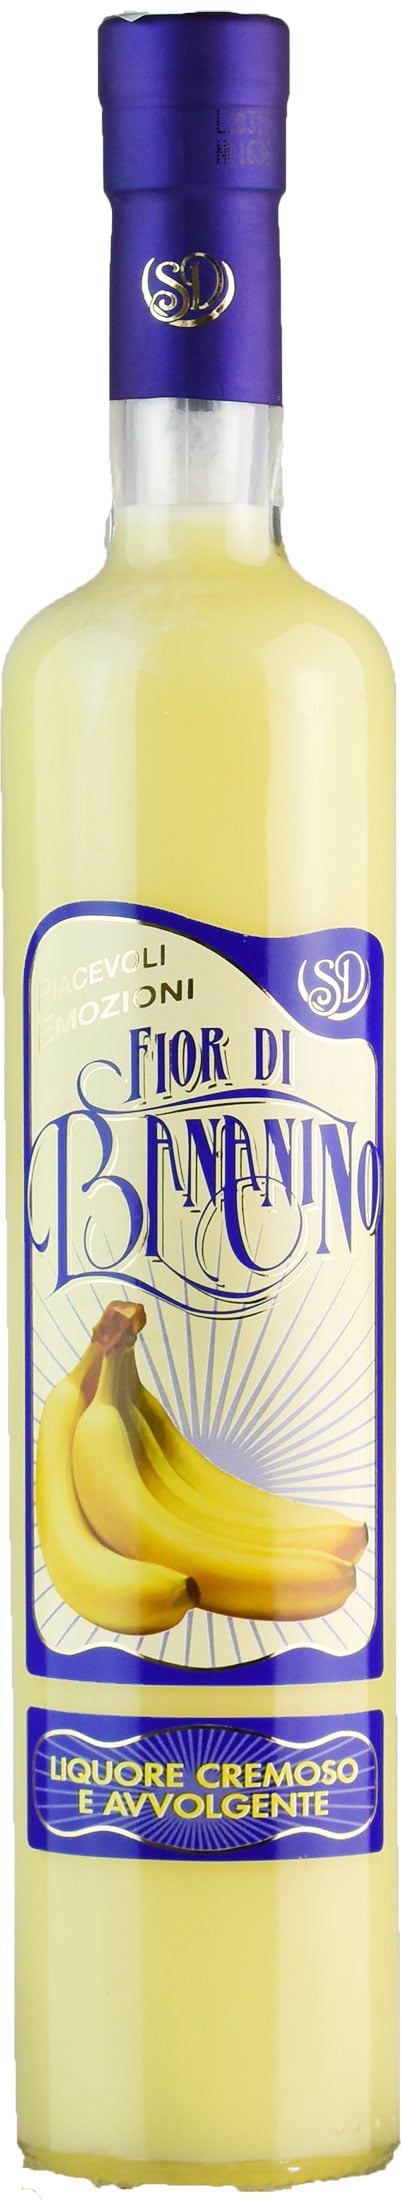 Fior di Bananino Liquore Cremoso 0.5L